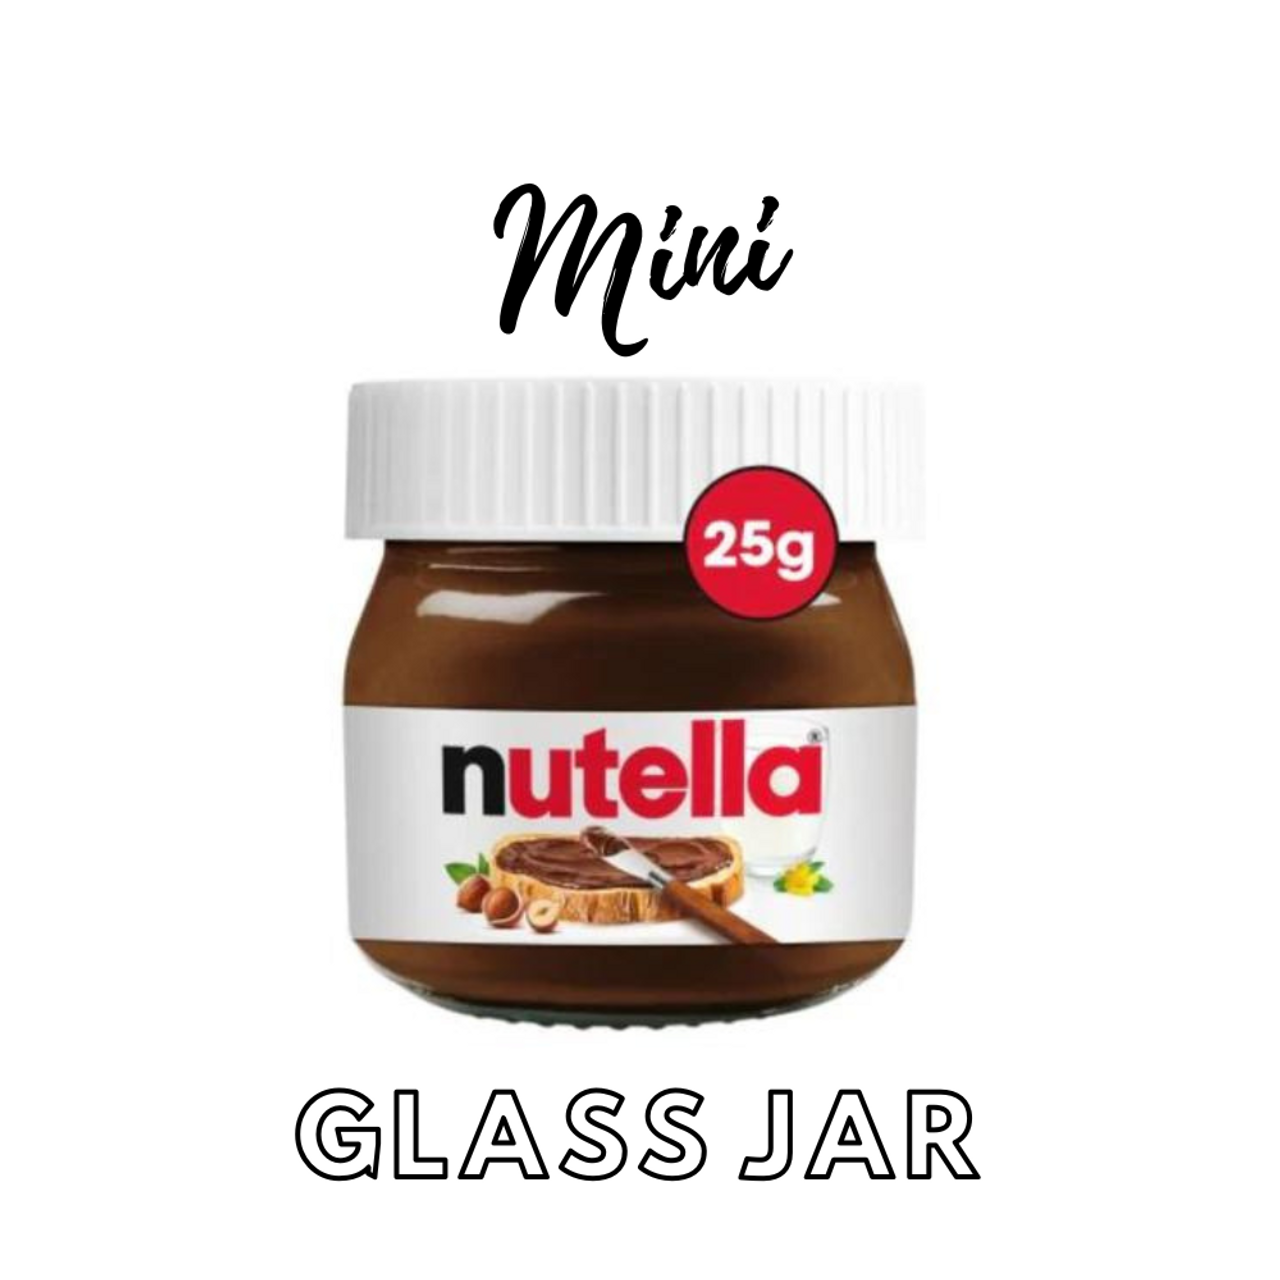 Nutella Mini Glass Jar 25g is not halal